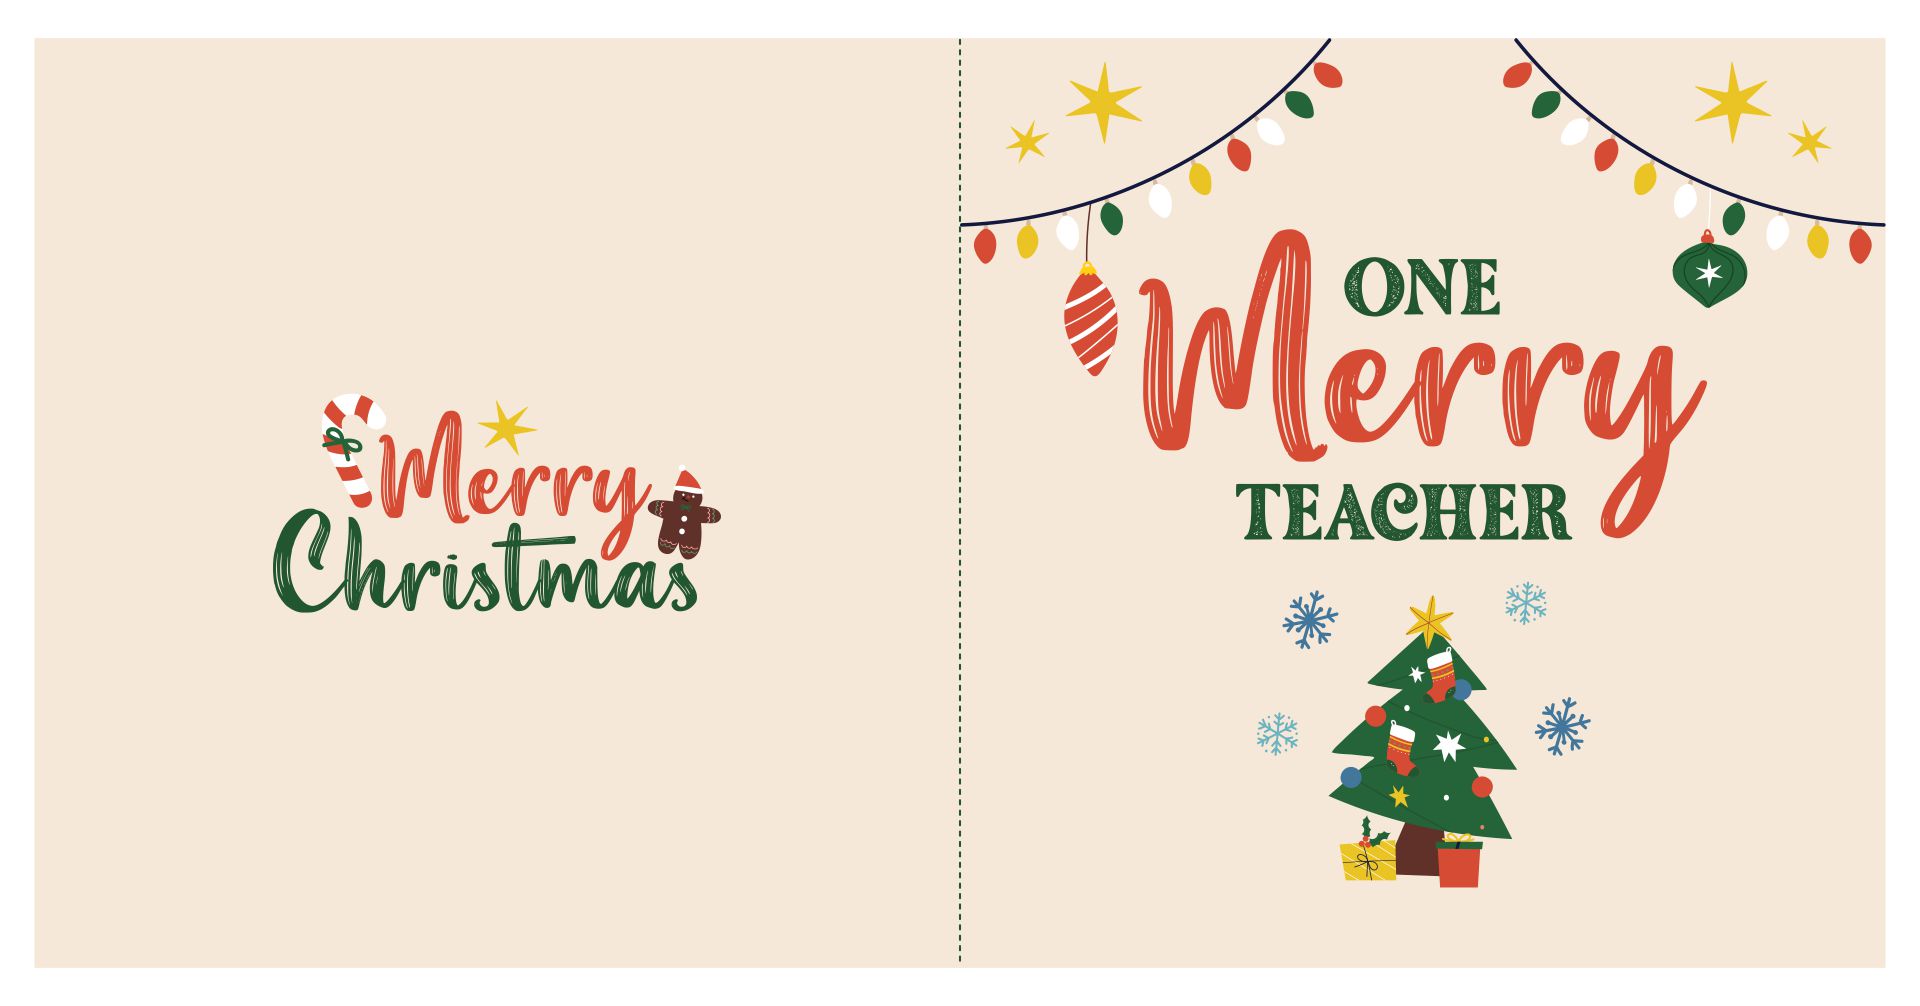 Printable Christmas Card For A Teacher To Wish Merry Christmas